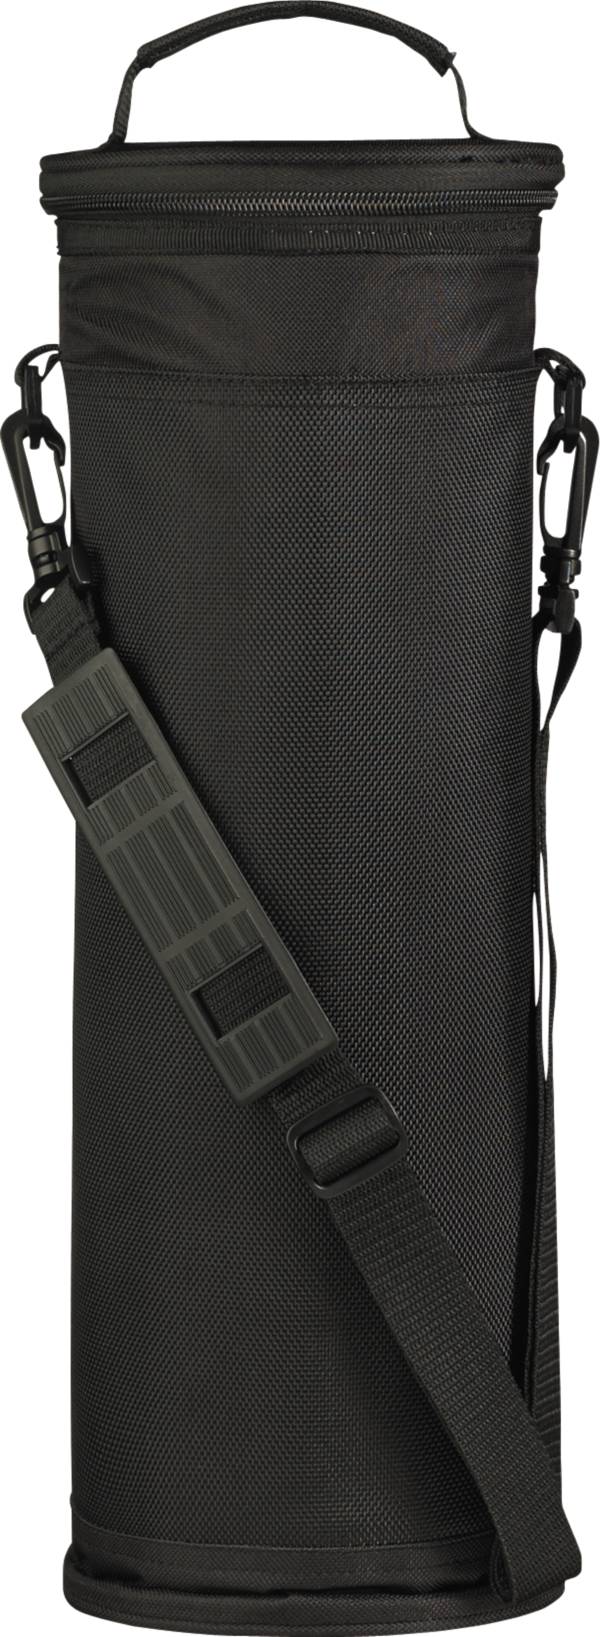 Maxfli Cooler Bag - Black product image